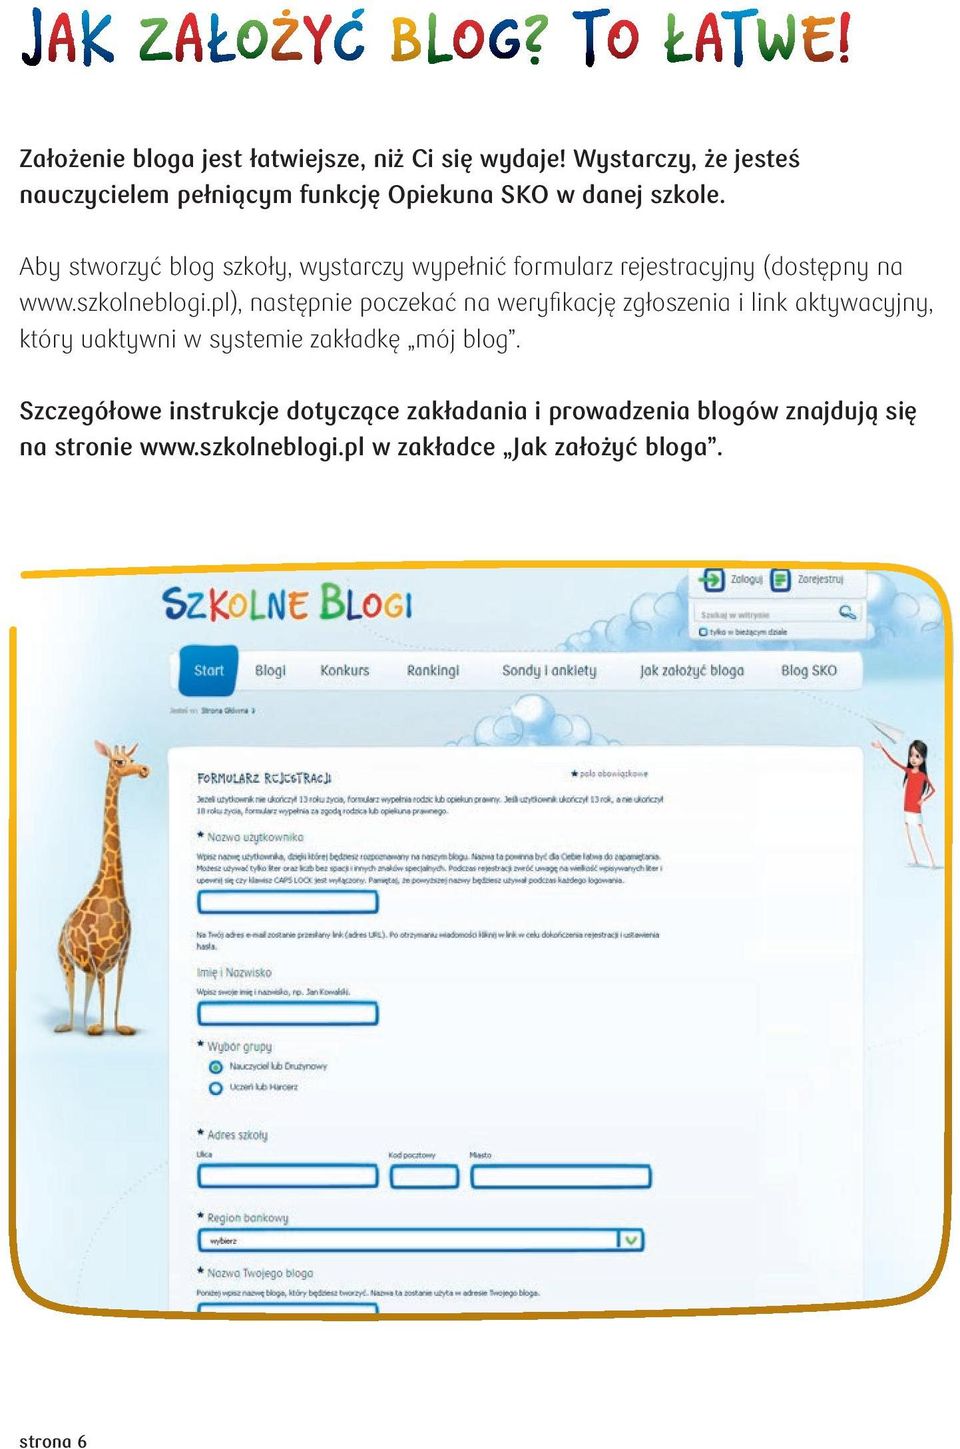 Aby stworzyć blog szkoły, wystarczy wypełnić formularz rejestracyjny (dostępny na www.szkolneblogi.